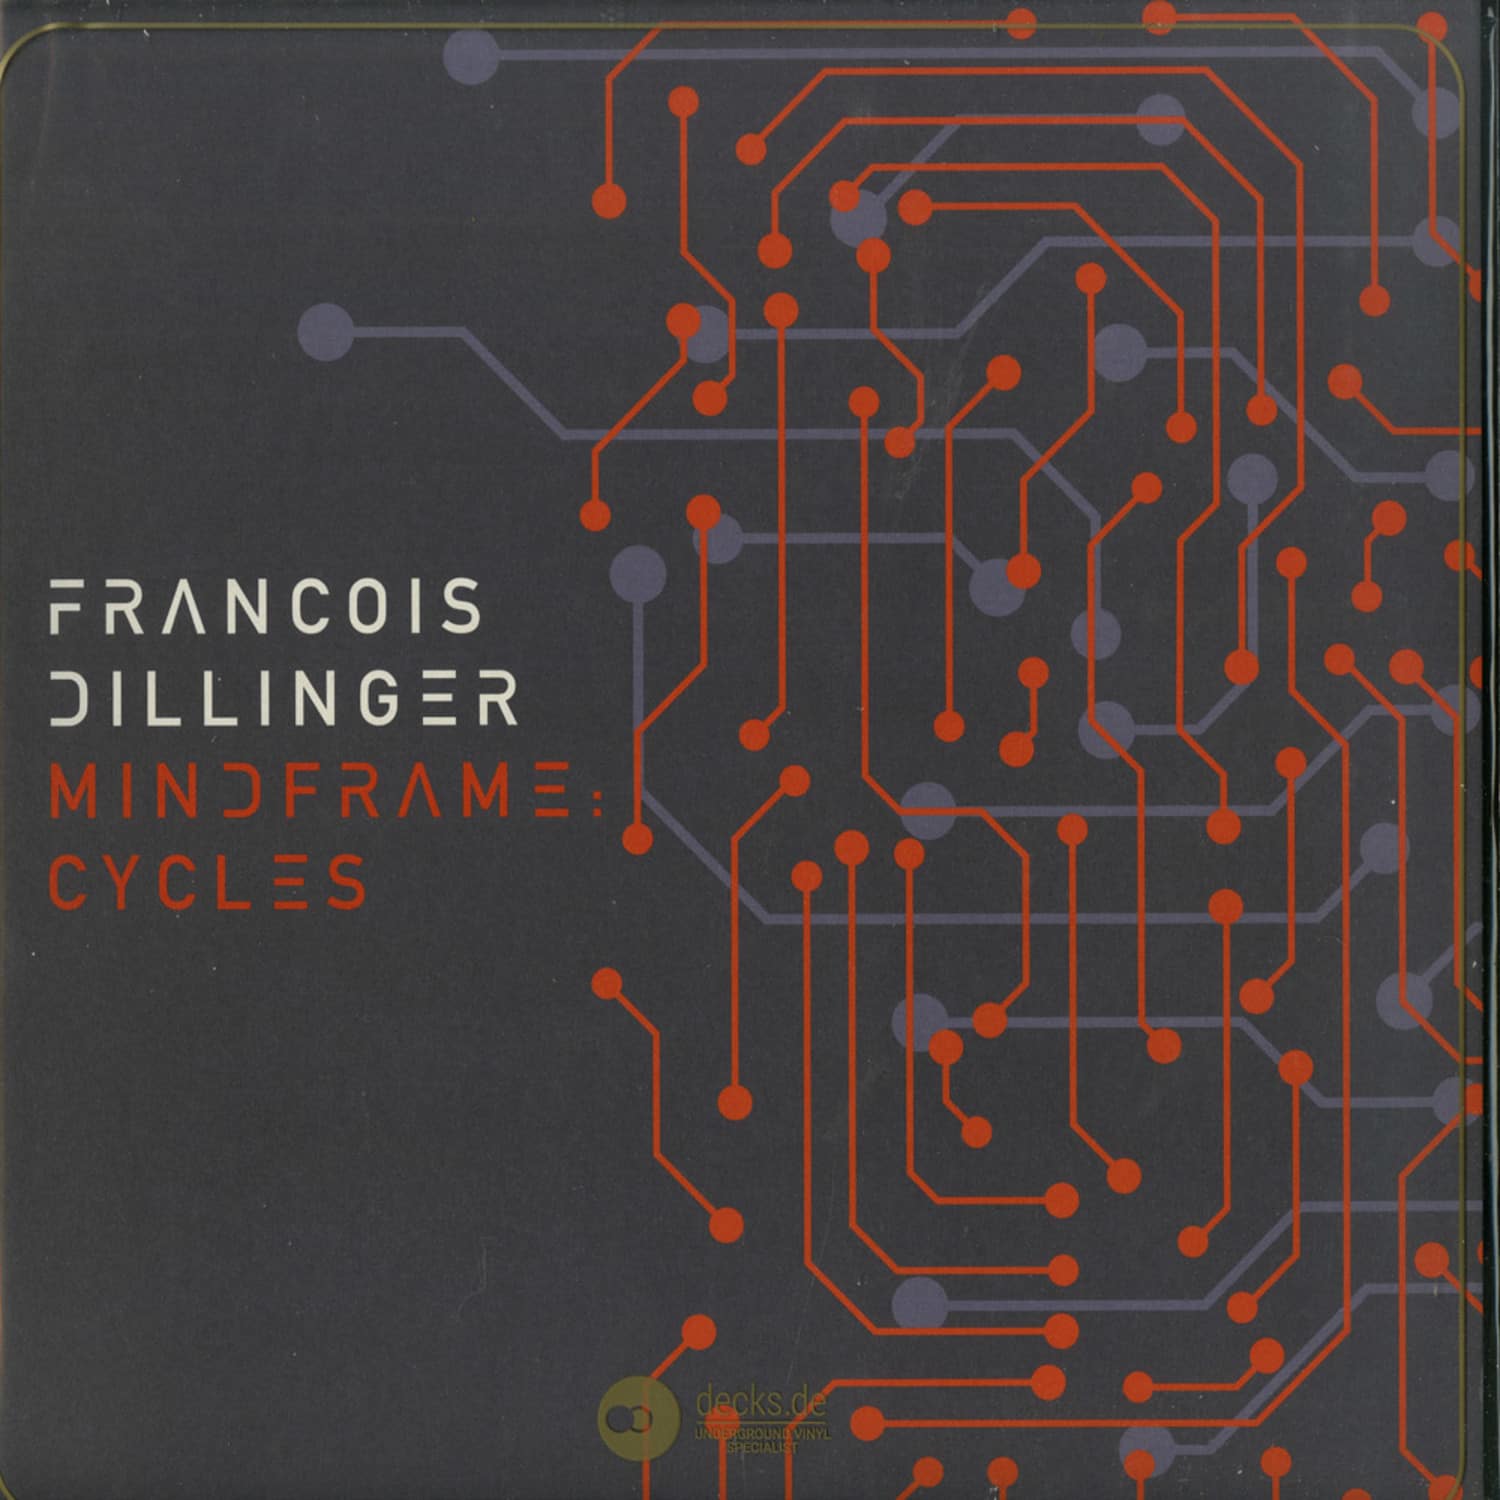 Francois Dillinger - MINDFRAME: CYCLES